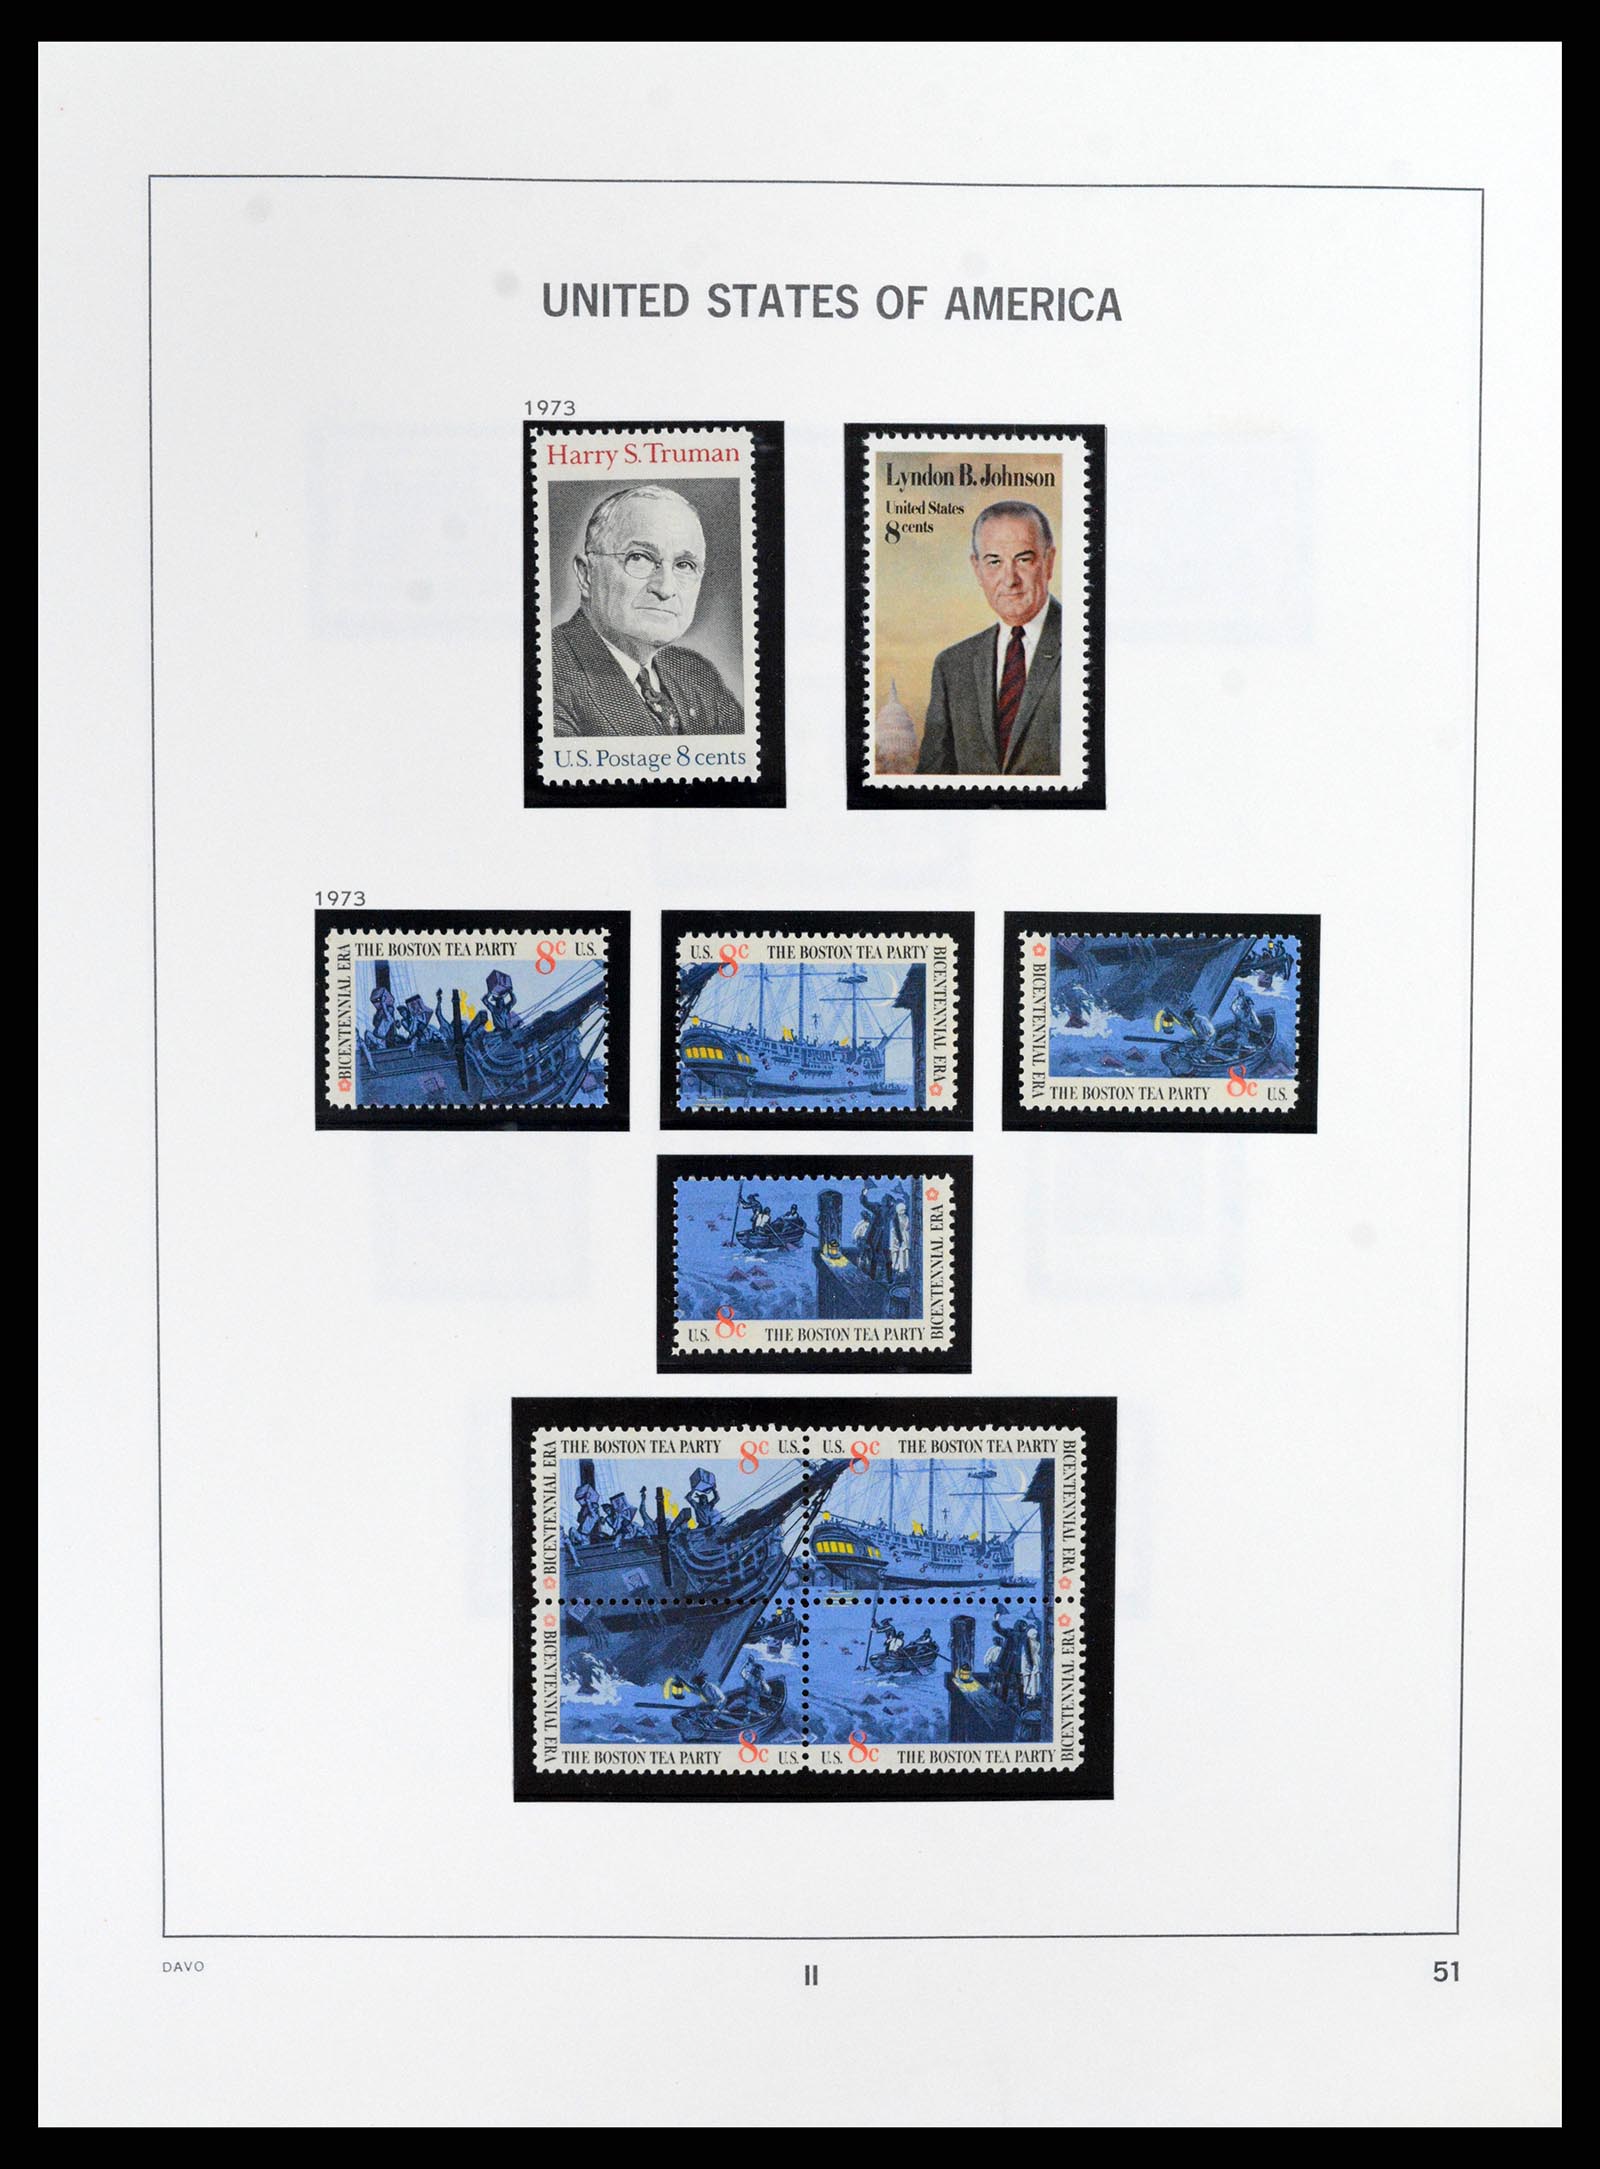 37357 055 - Stamp collection 37357 USA 1945-2009.